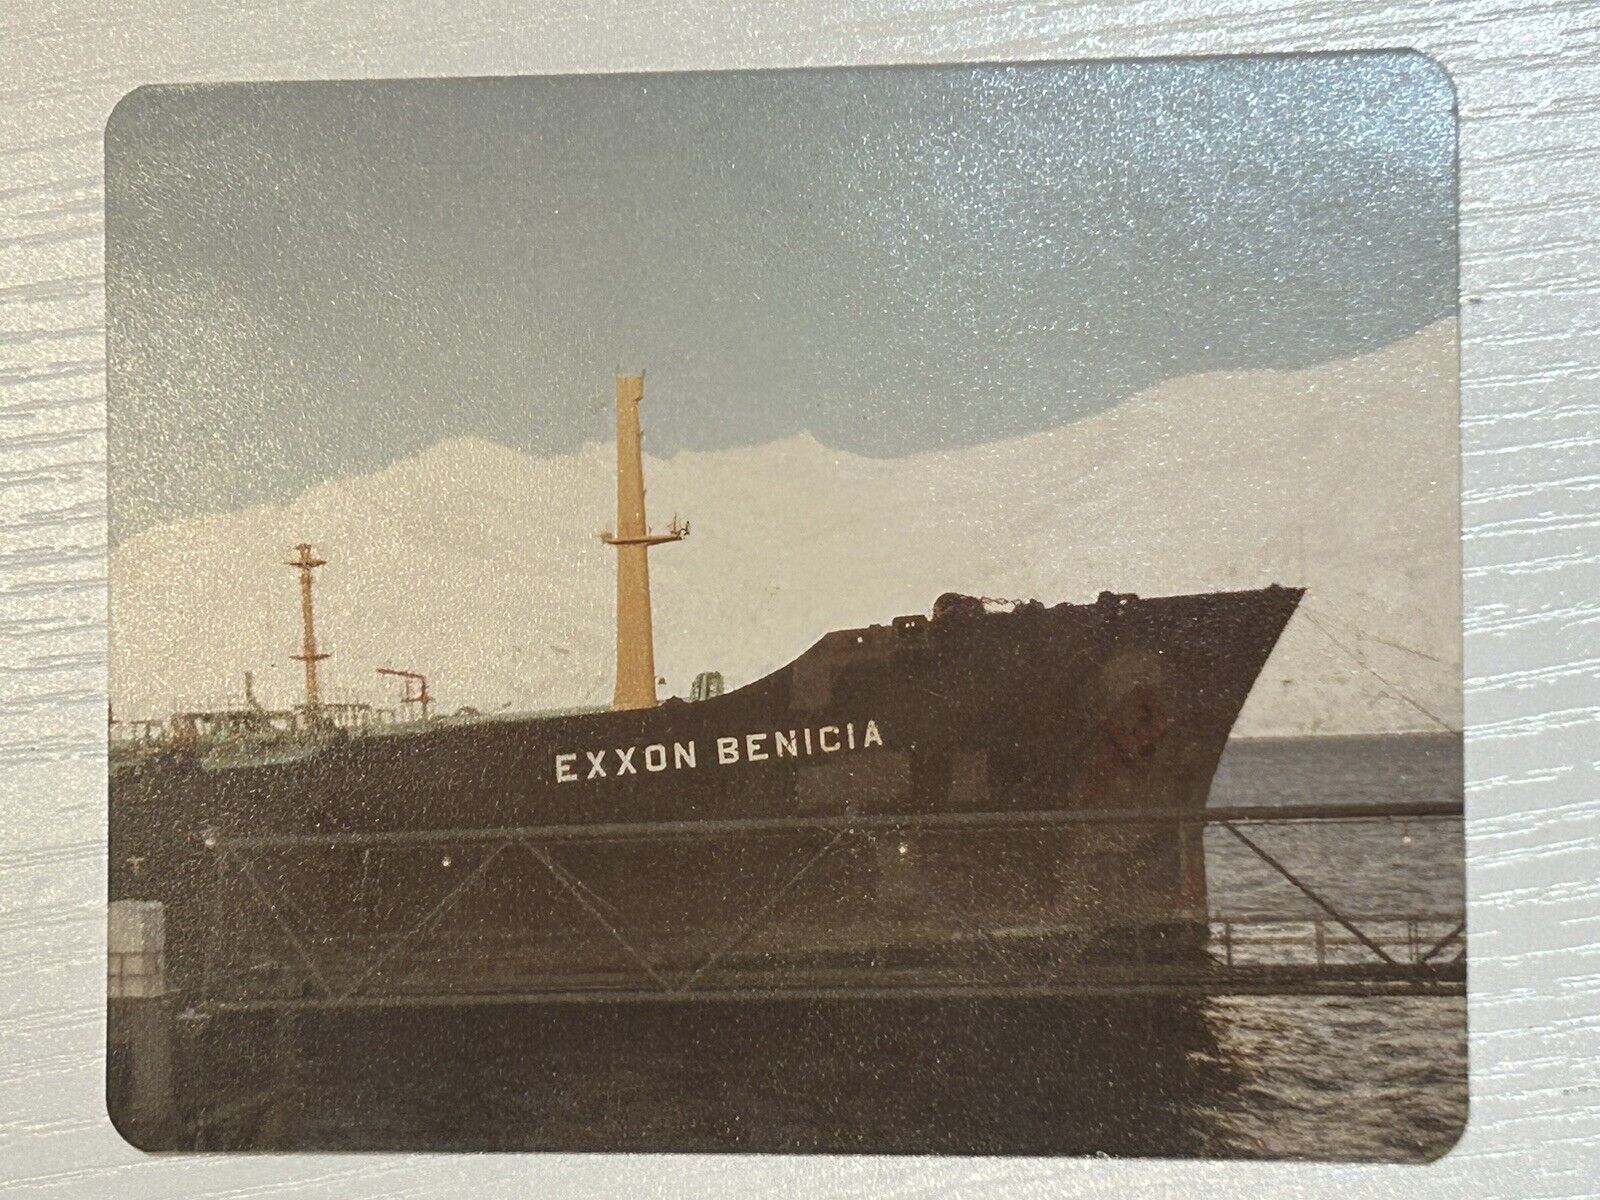 Vtg Exxon Benicia Ship Alaska Oil 1970s Color Photo Snap Shot 1B75